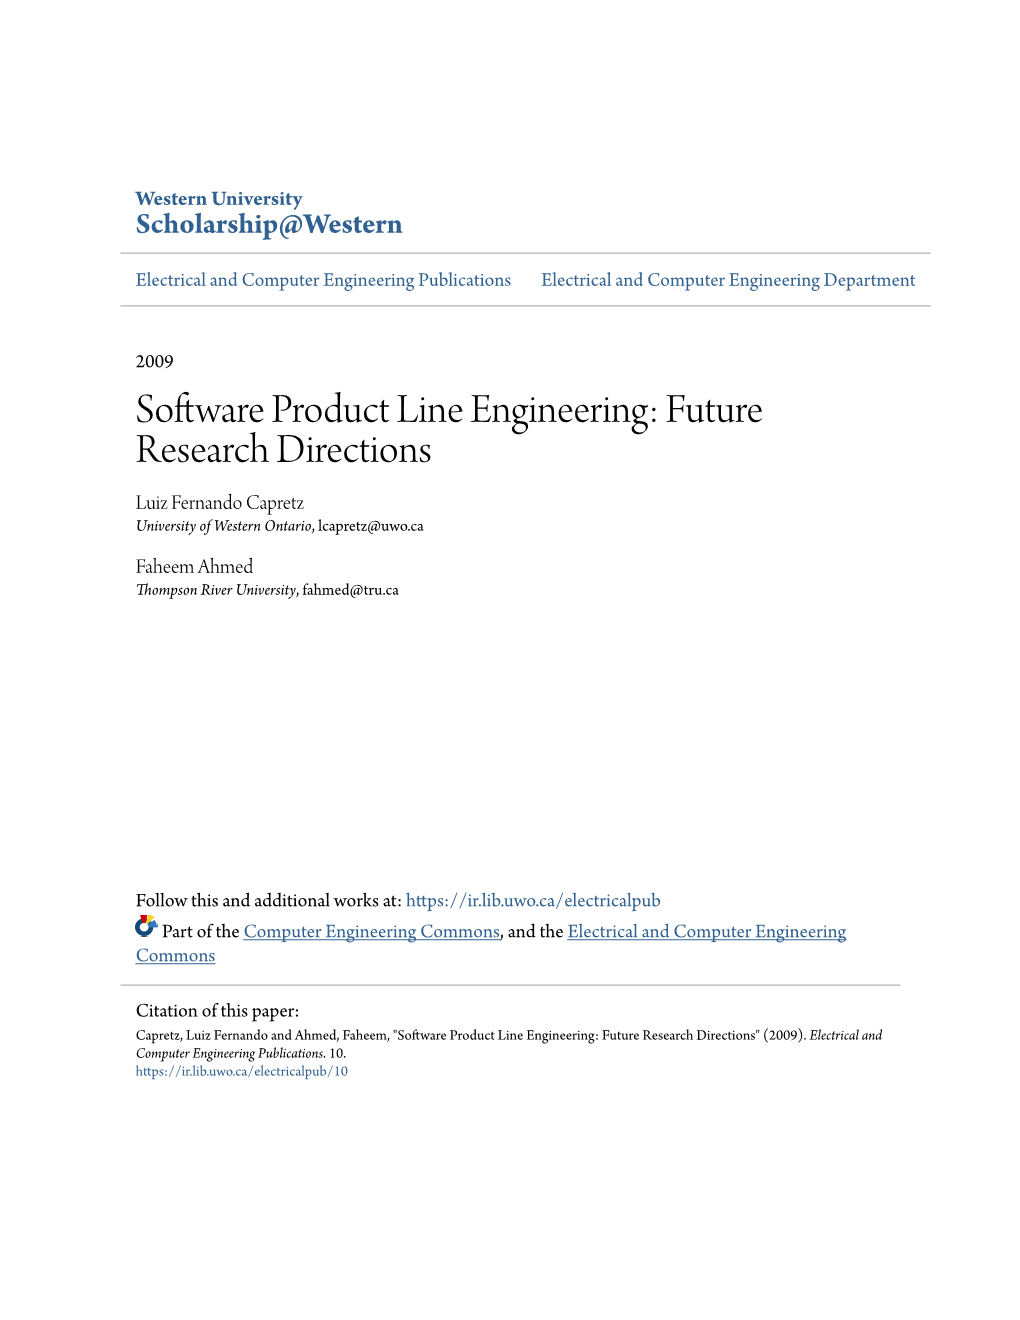 Software Product Line Engineering: Future Research Directions Luiz Fernando Capretz University of Western Ontario, Lcapretz@Uwo.Ca